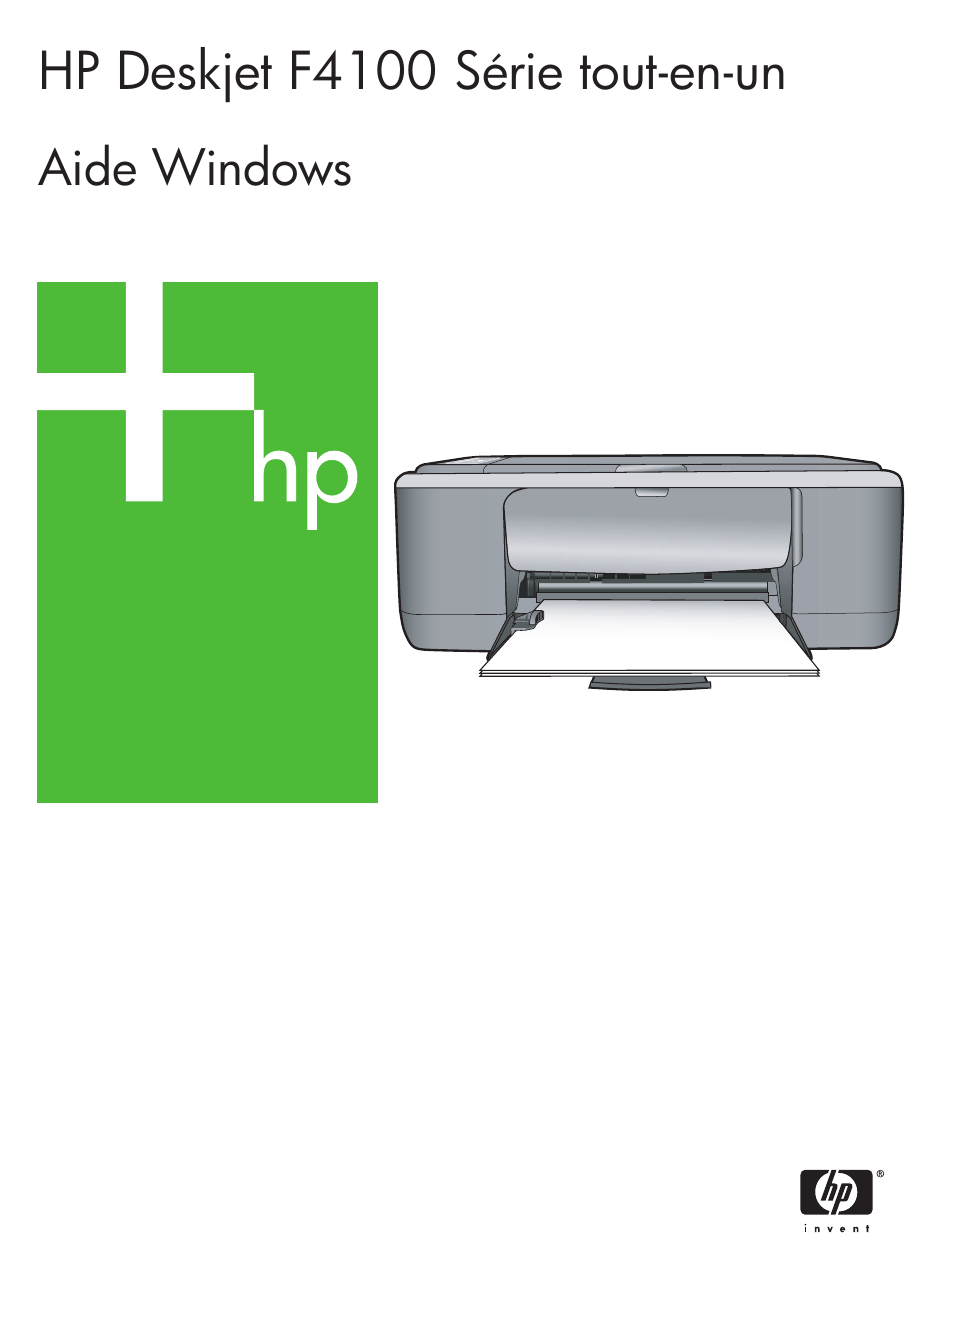 HP Imprimante tout-en-un HP Deskjet F4172 Manuel d'utilisation | Pages: 154